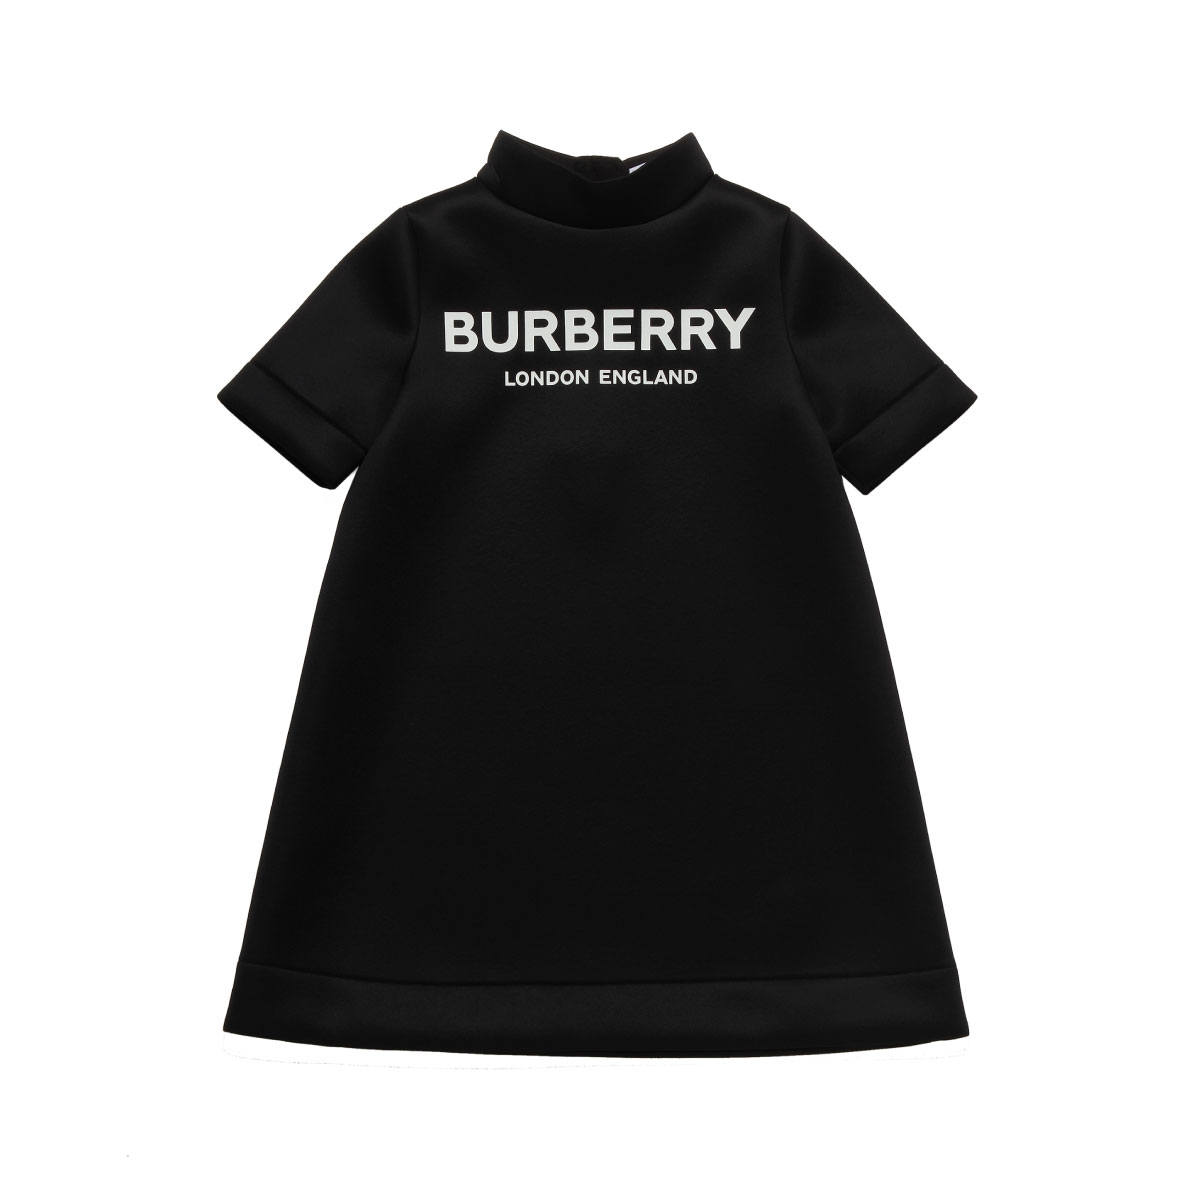 burberry outerwear women's